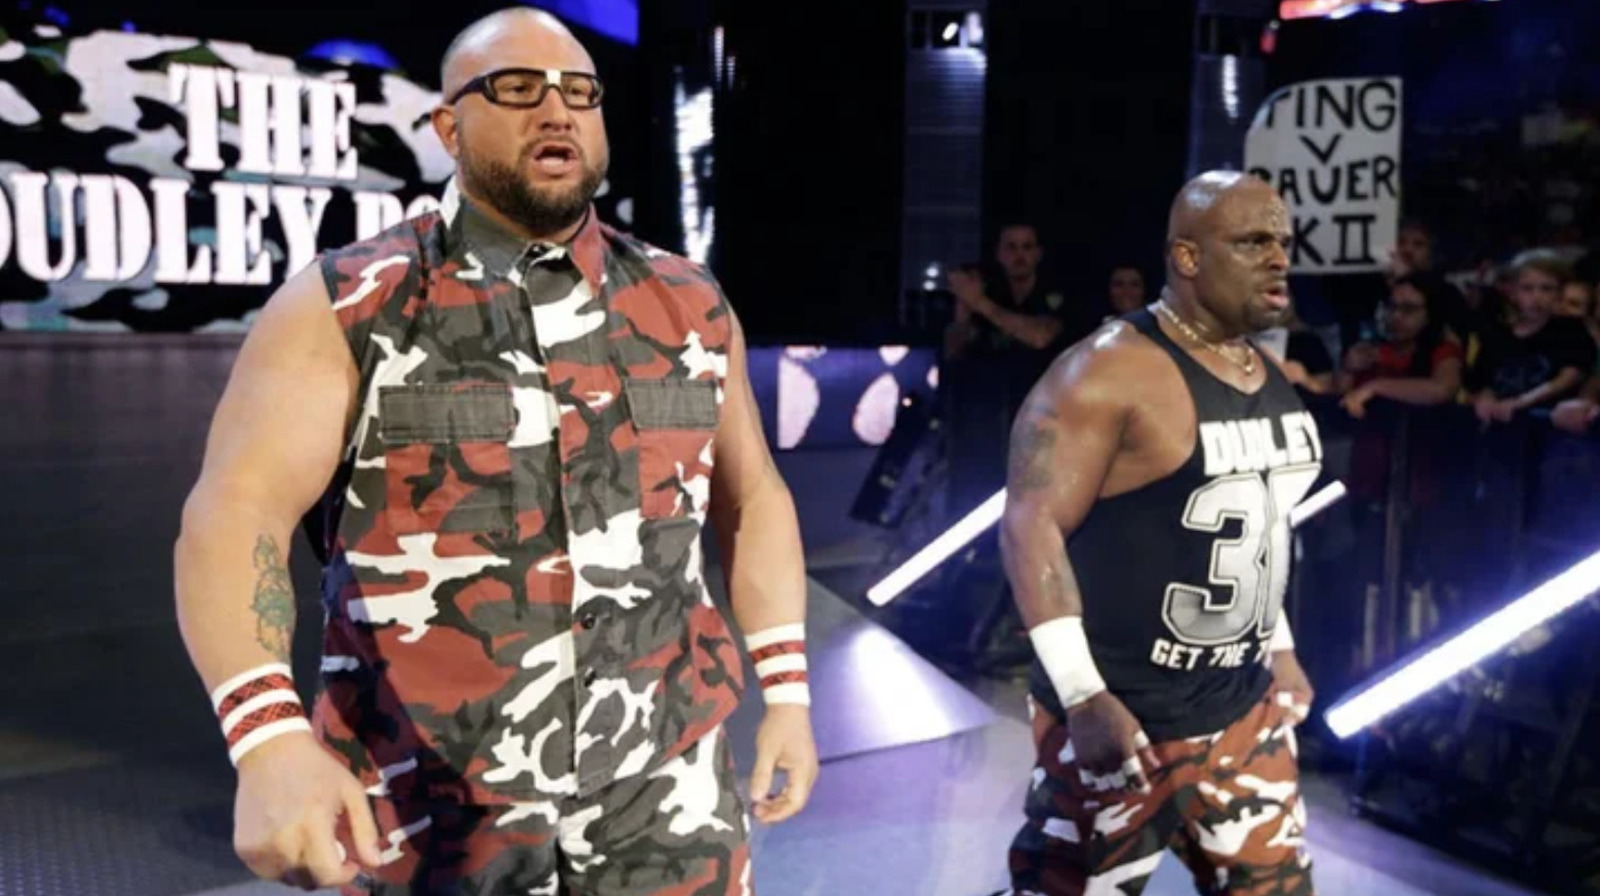 Los Dudley Boyz supuestamente han firmado contratos de leyendas de la WWE